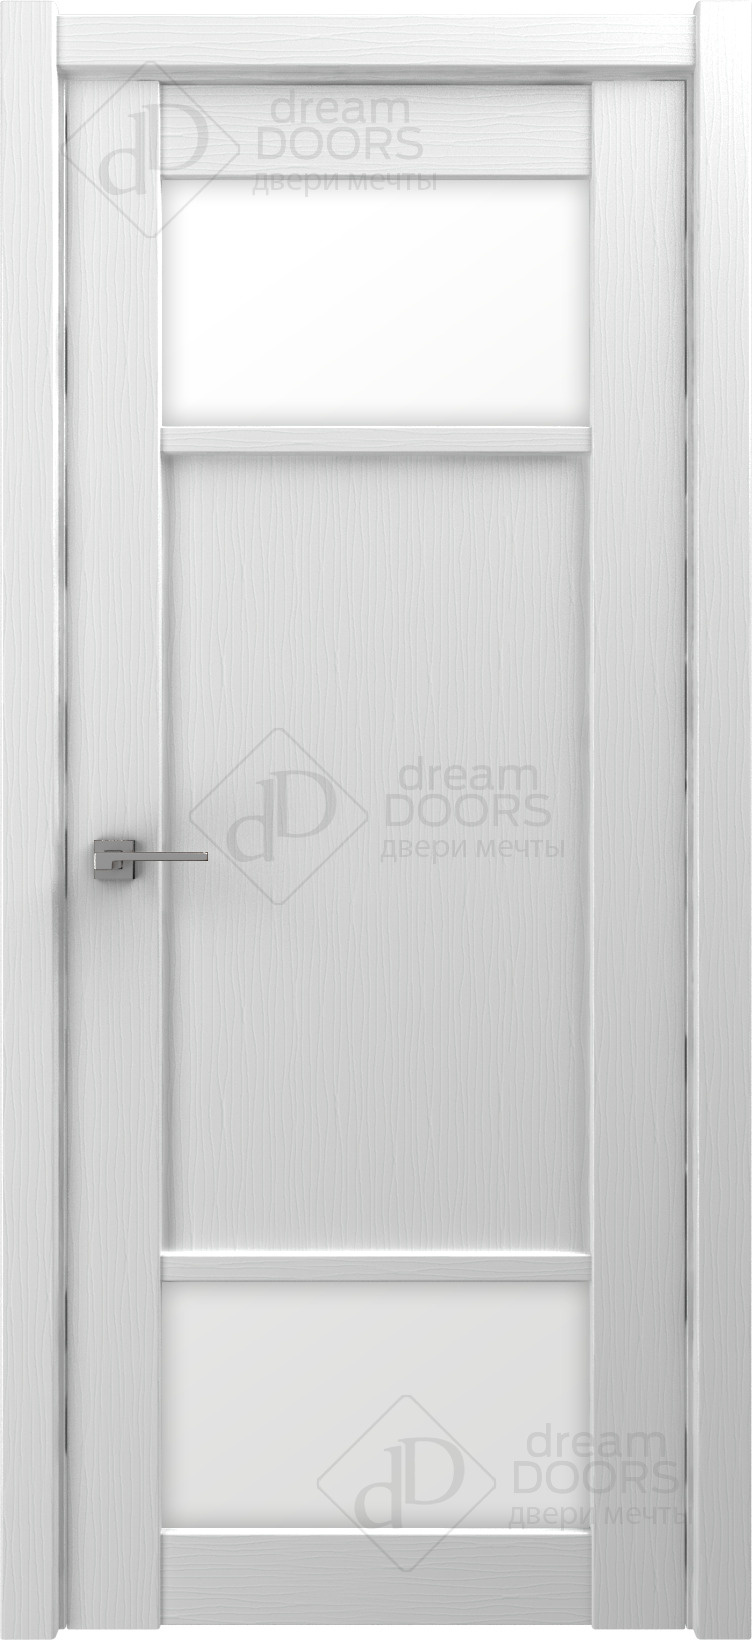 Dream Doors Межкомнатная дверь V27, арт. 18244 - фото №3